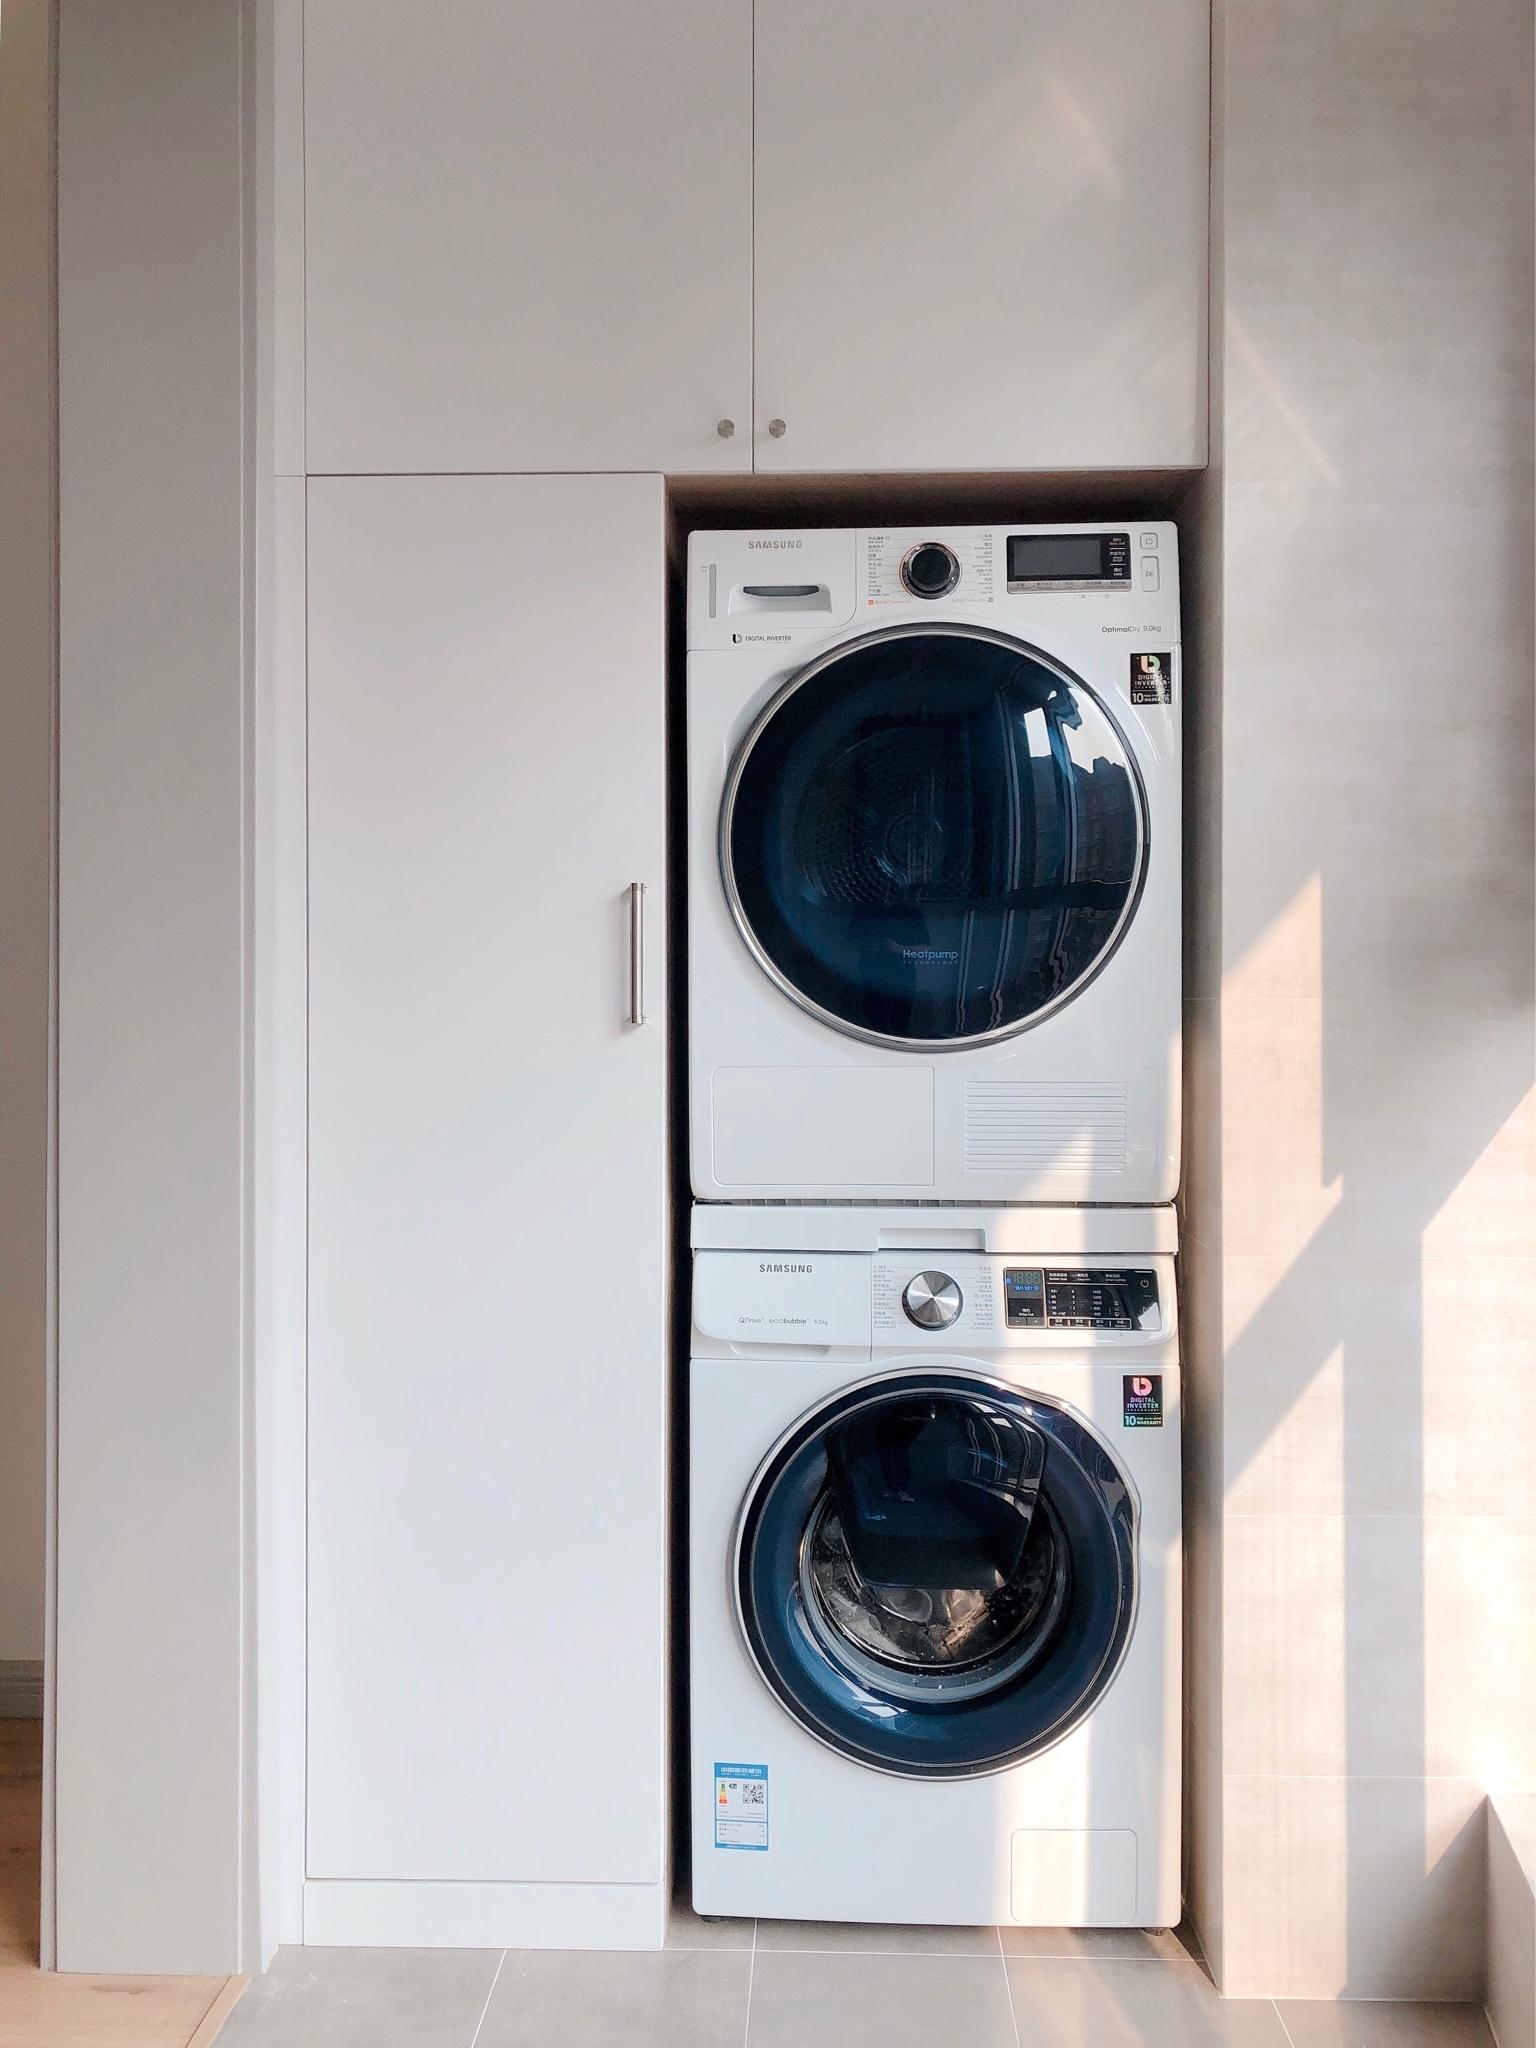 独立干衣机的体积和洗衣机差不多,就算是买洗烘套装,把干衣机和洗衣机